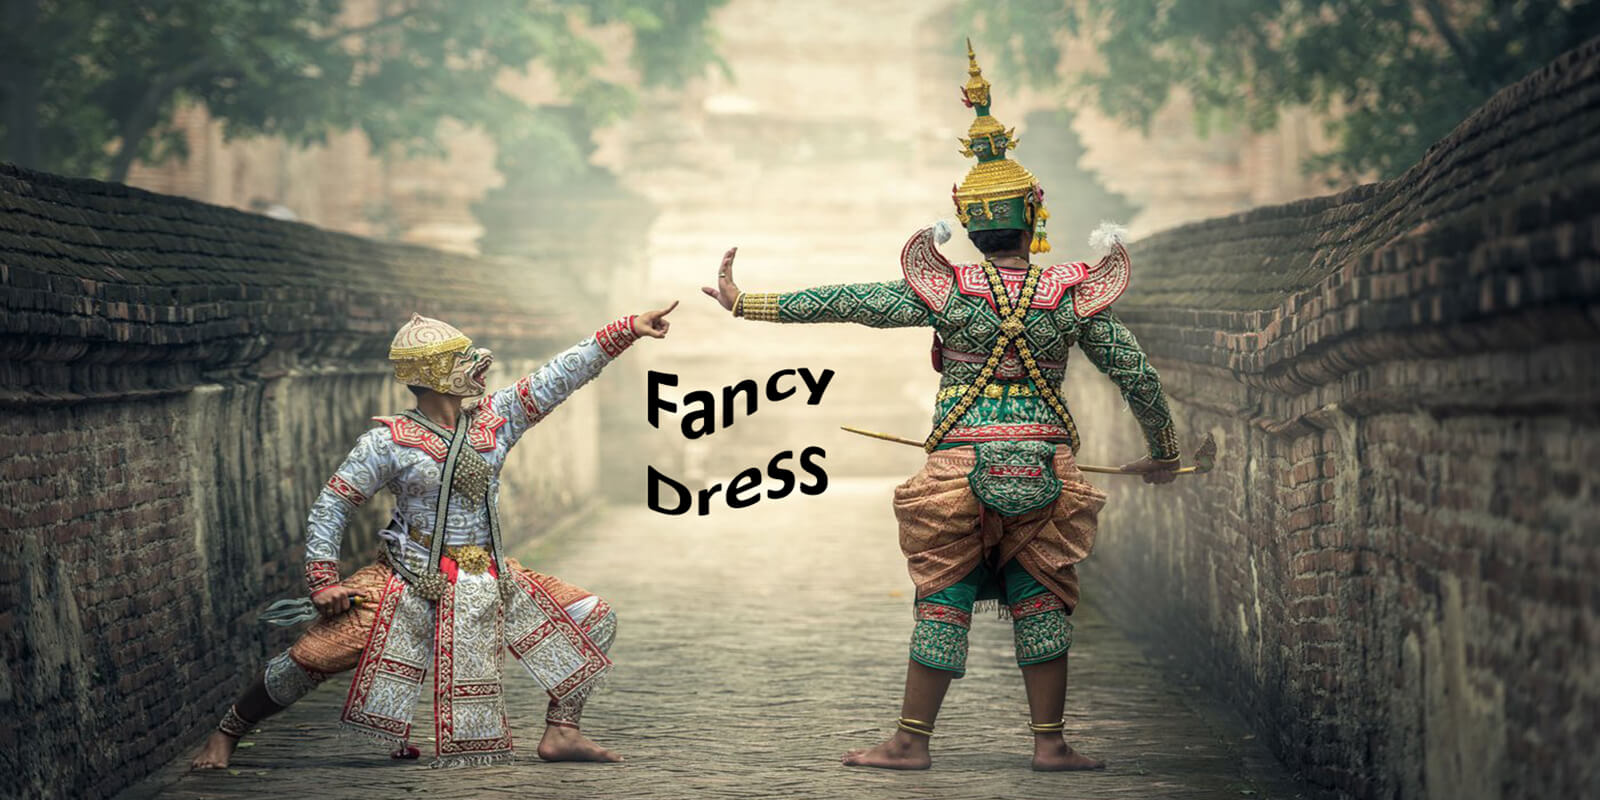 Fancy Dress costumes